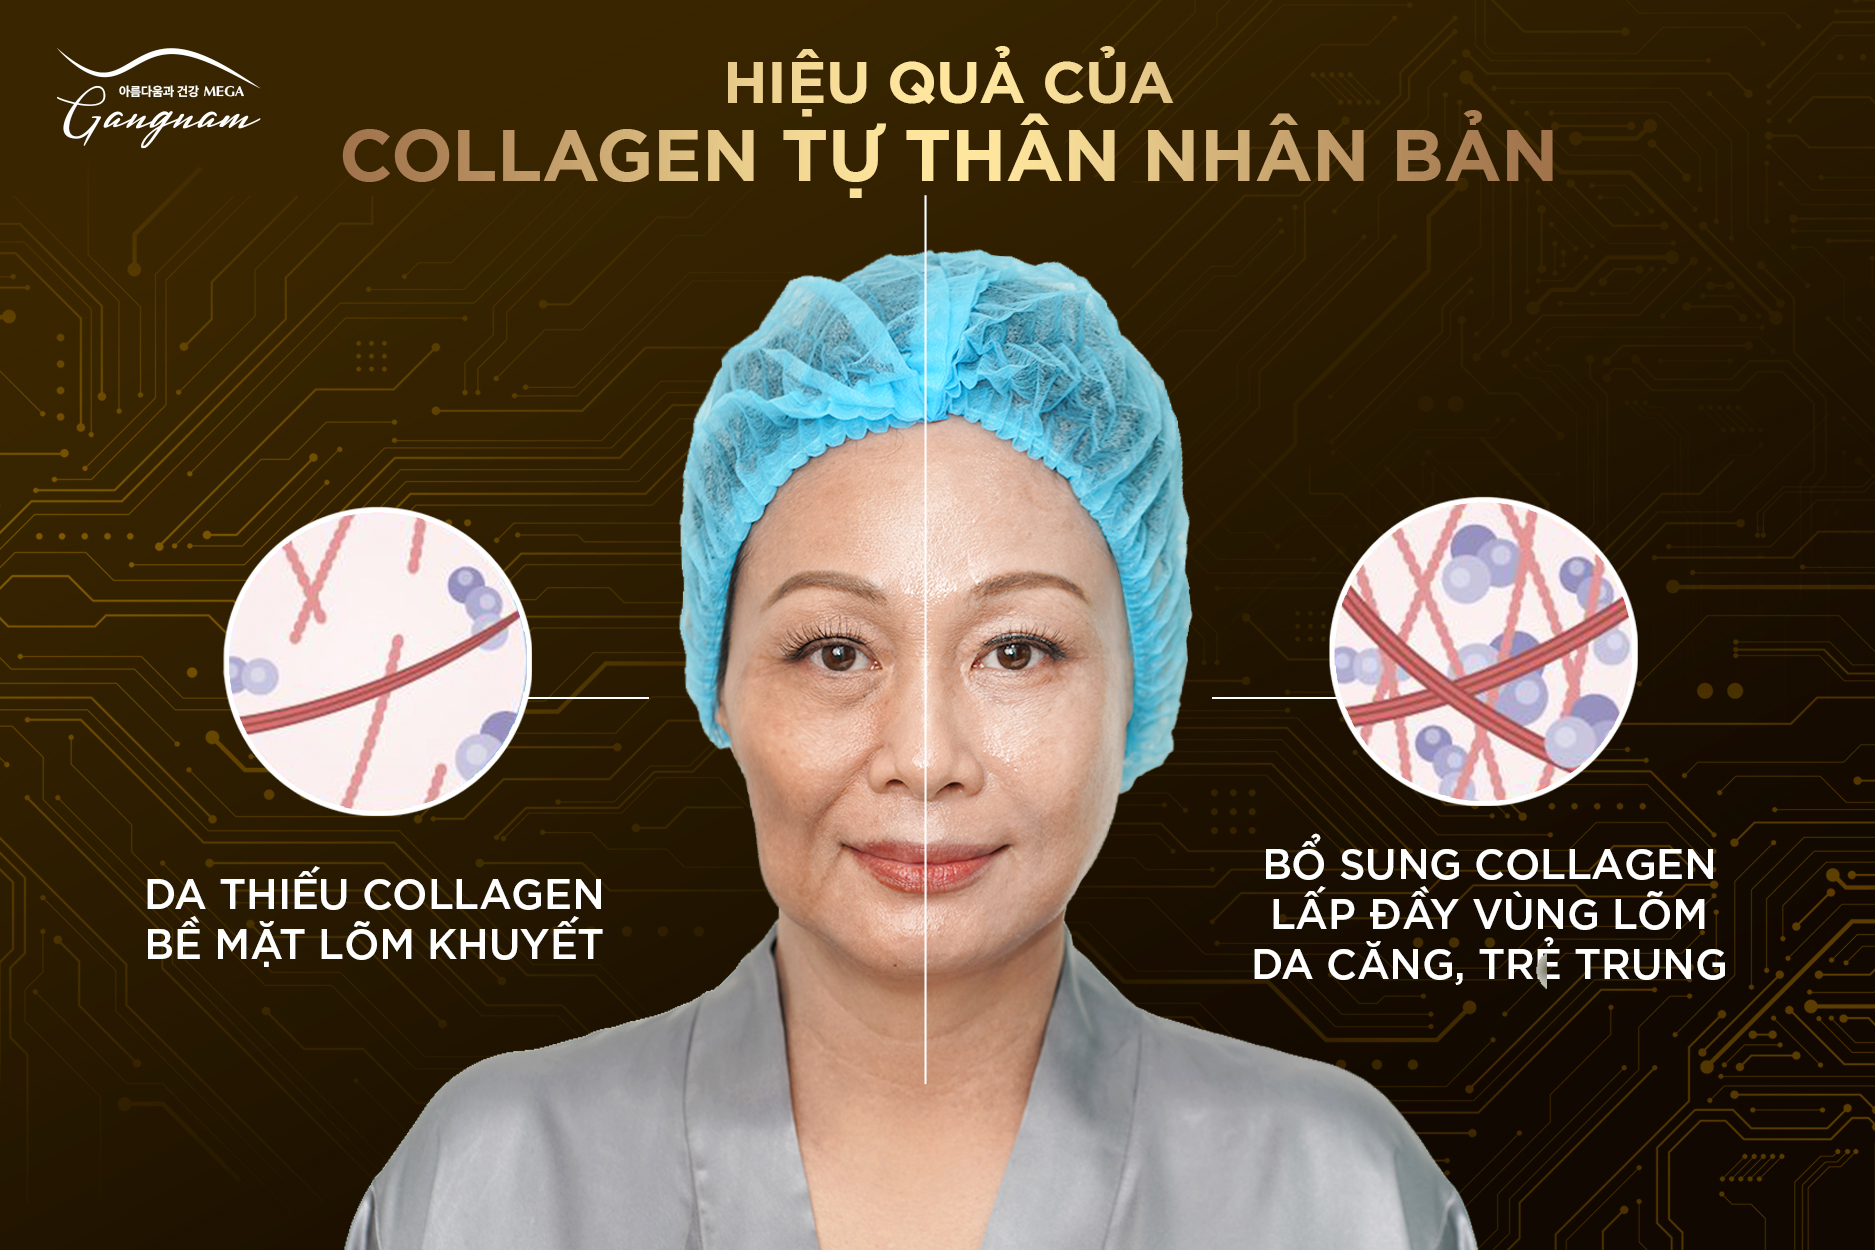 Collagen tự thân nhân bản xứng đáng là giải pháp an toàn bổ sung collagen trực tiếp cho làn da